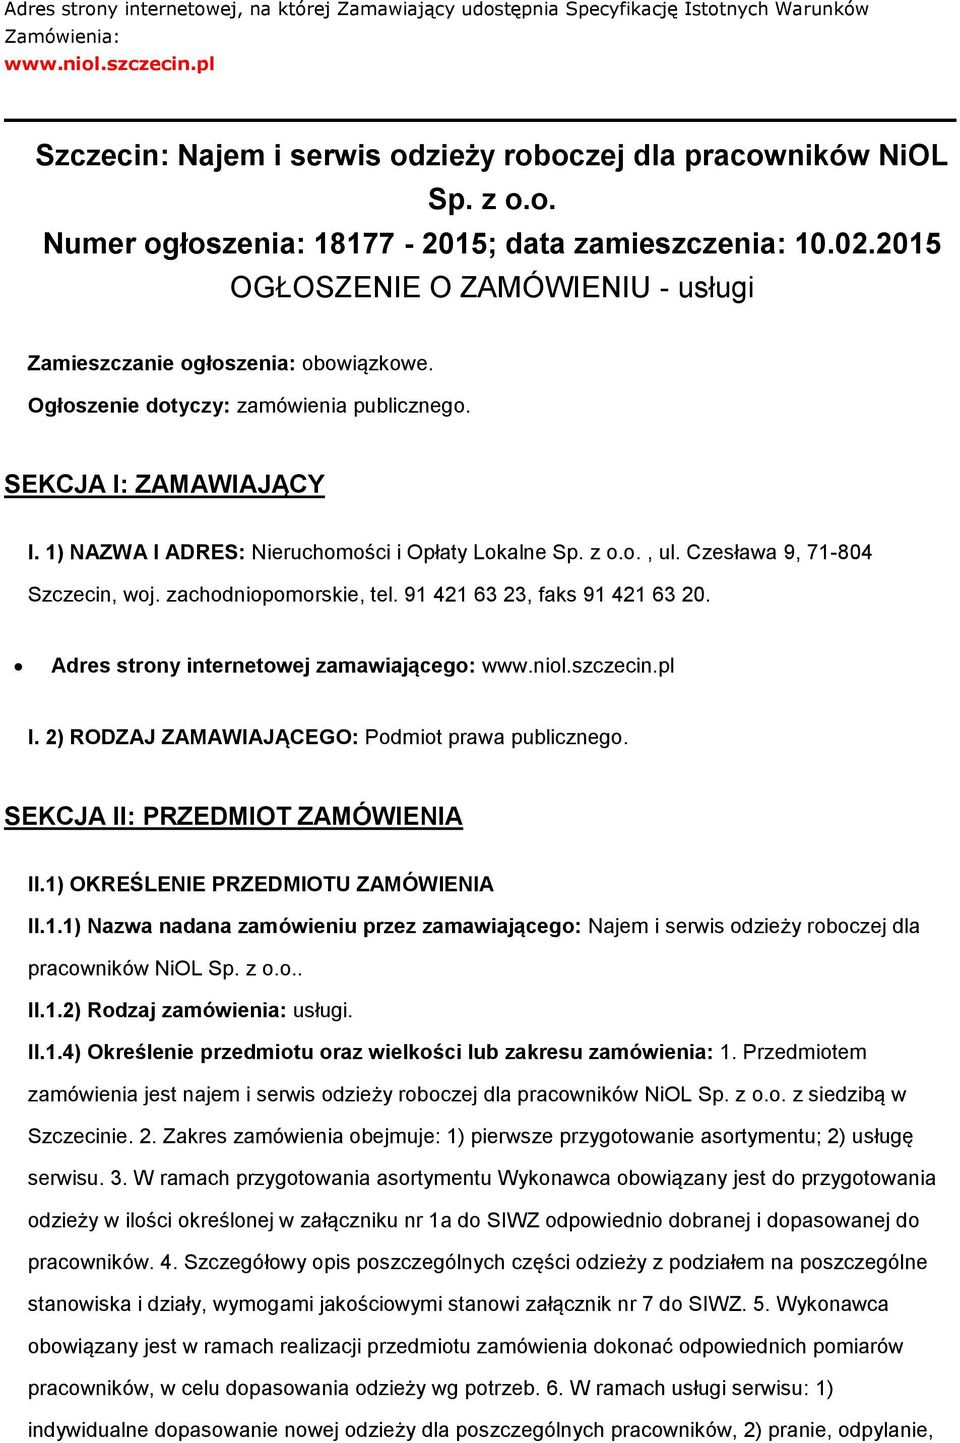 1) NAZWA I ADRES: Nieruchmści i Opłaty Lkalne Sp. z.., ul. Czesława 9, 71-804 Szczecin, wj. zachdnipmrskie, tel. 91 421 63 23, faks 91 421 63 20. Adres strny internetwej zamawiająceg: www.nil.